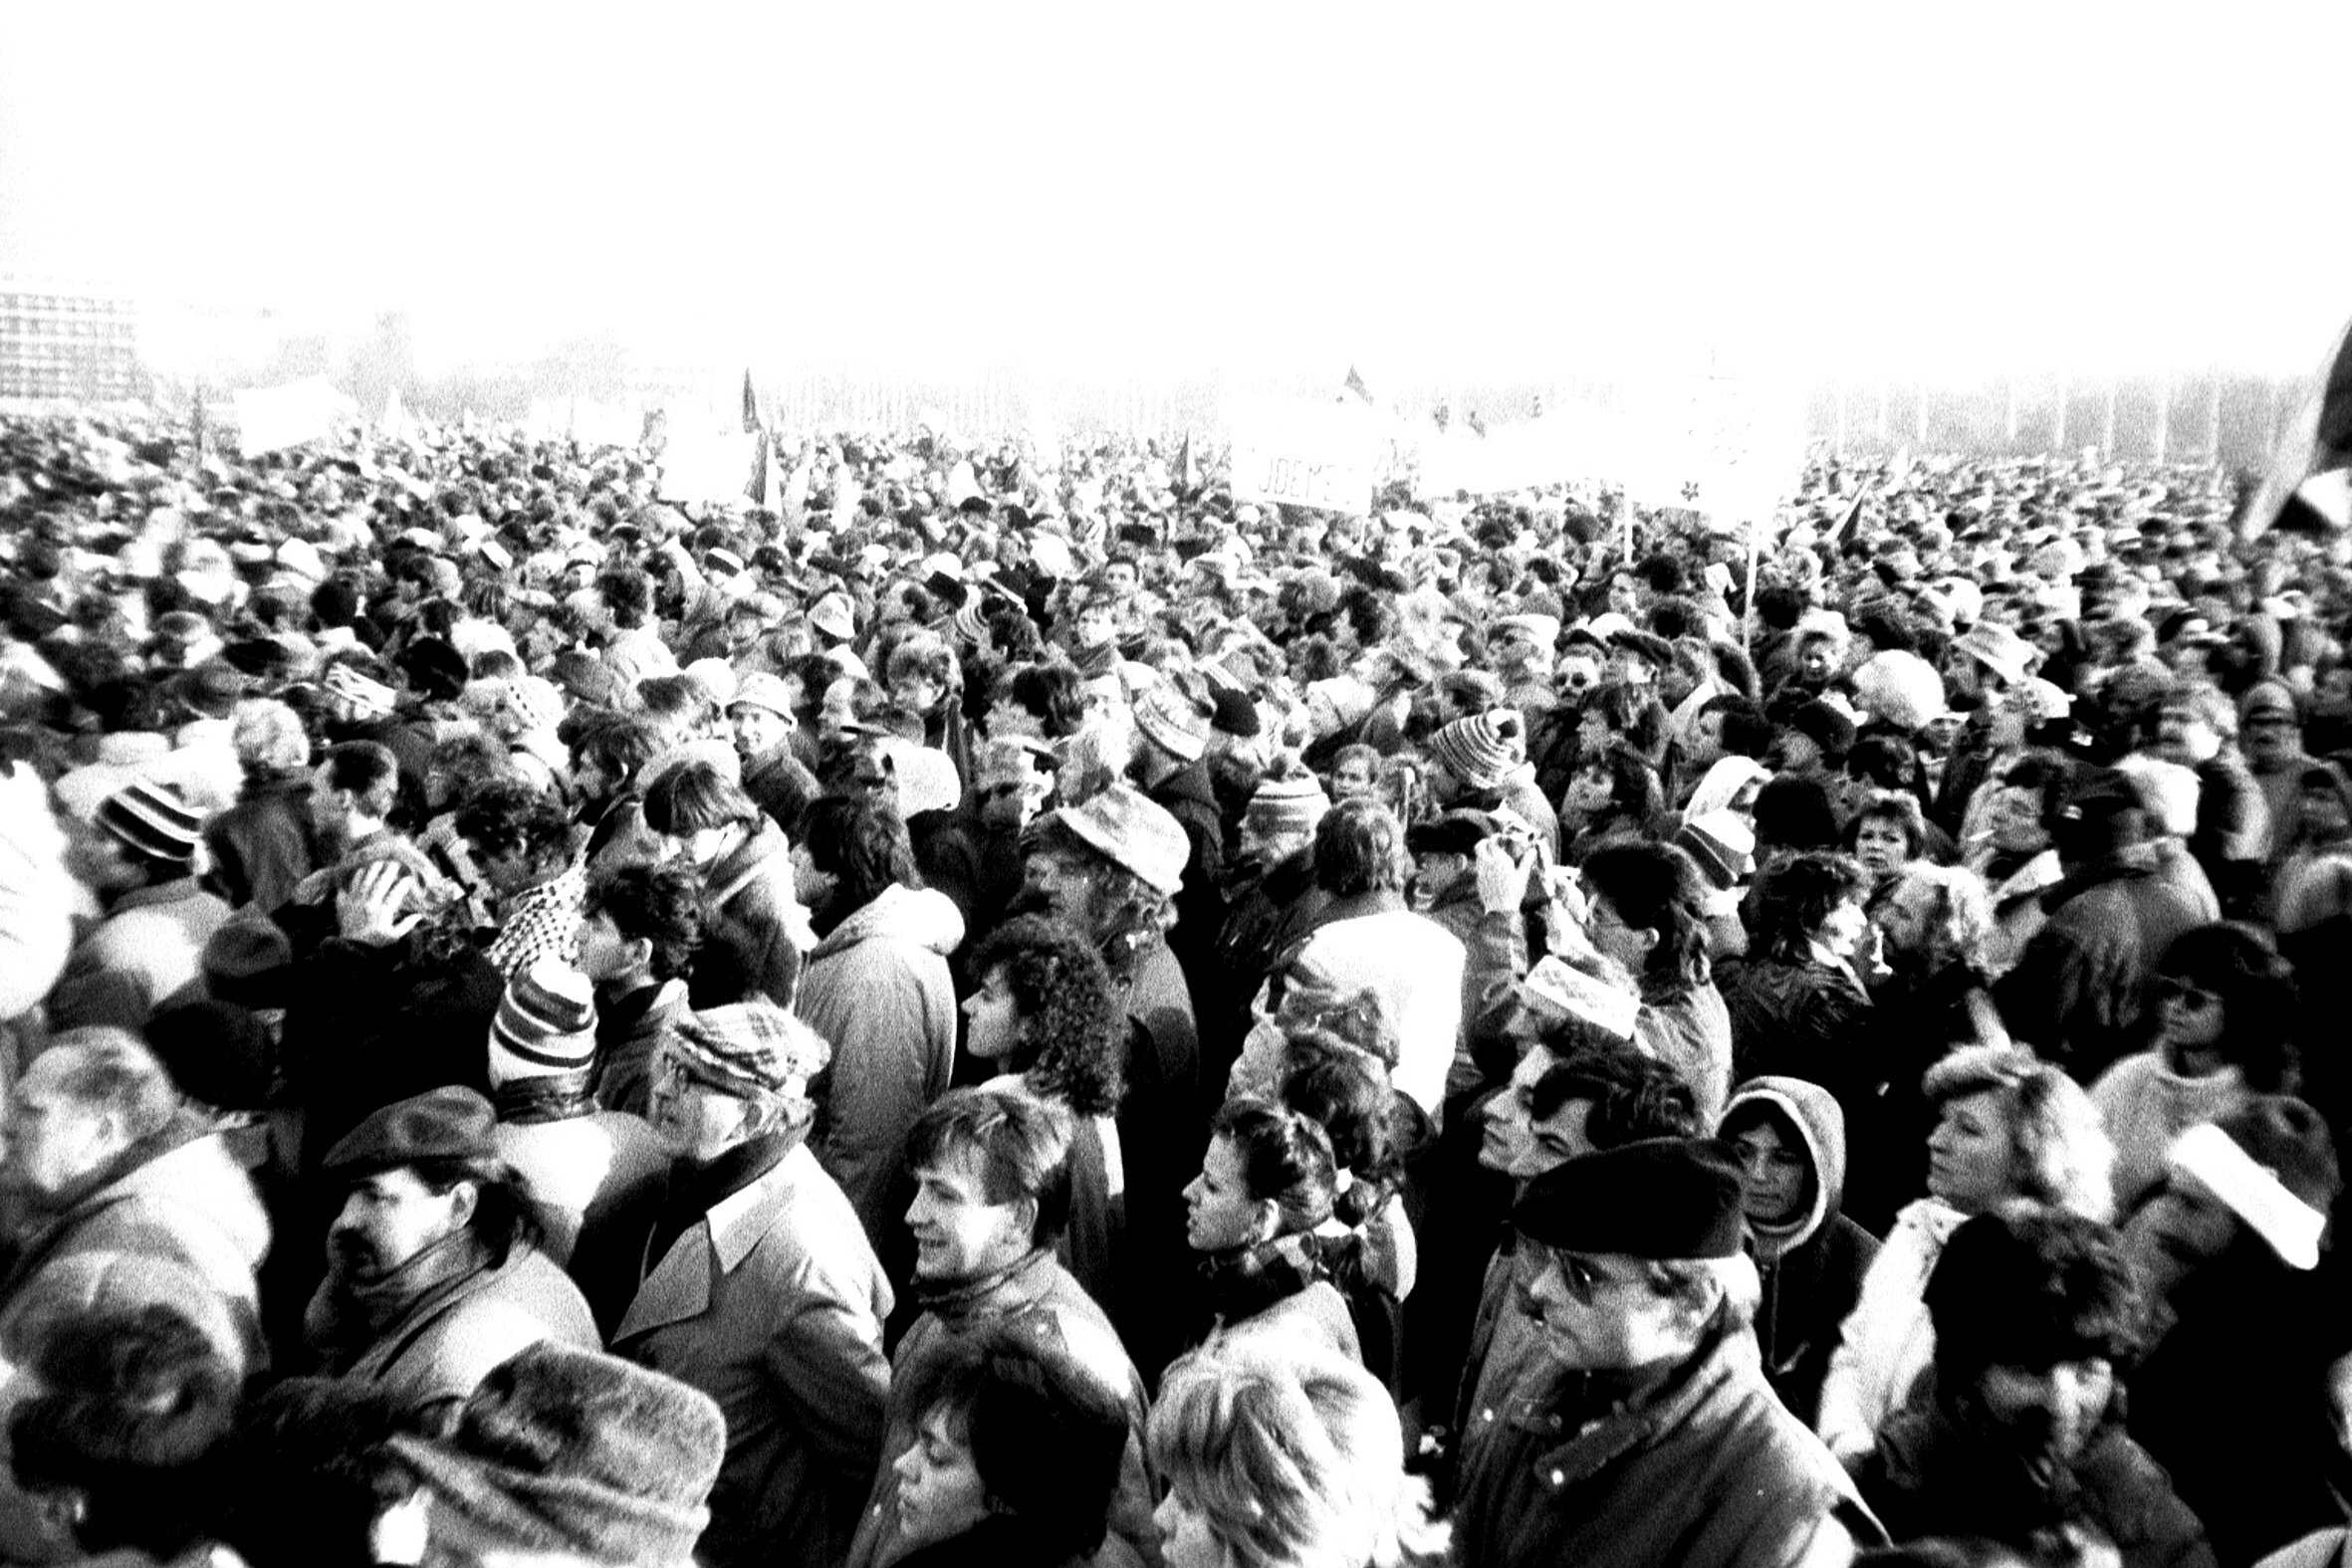 A Revolução de Veludo (17 de novembro a 29 de dezembro de 1989) refere-se à revolução não agressiva na antiga Checoslováquia que testemunhou a deposição do governo comunista daquele país. Esta é vista como uma das mais importantes revoluções de 1989.